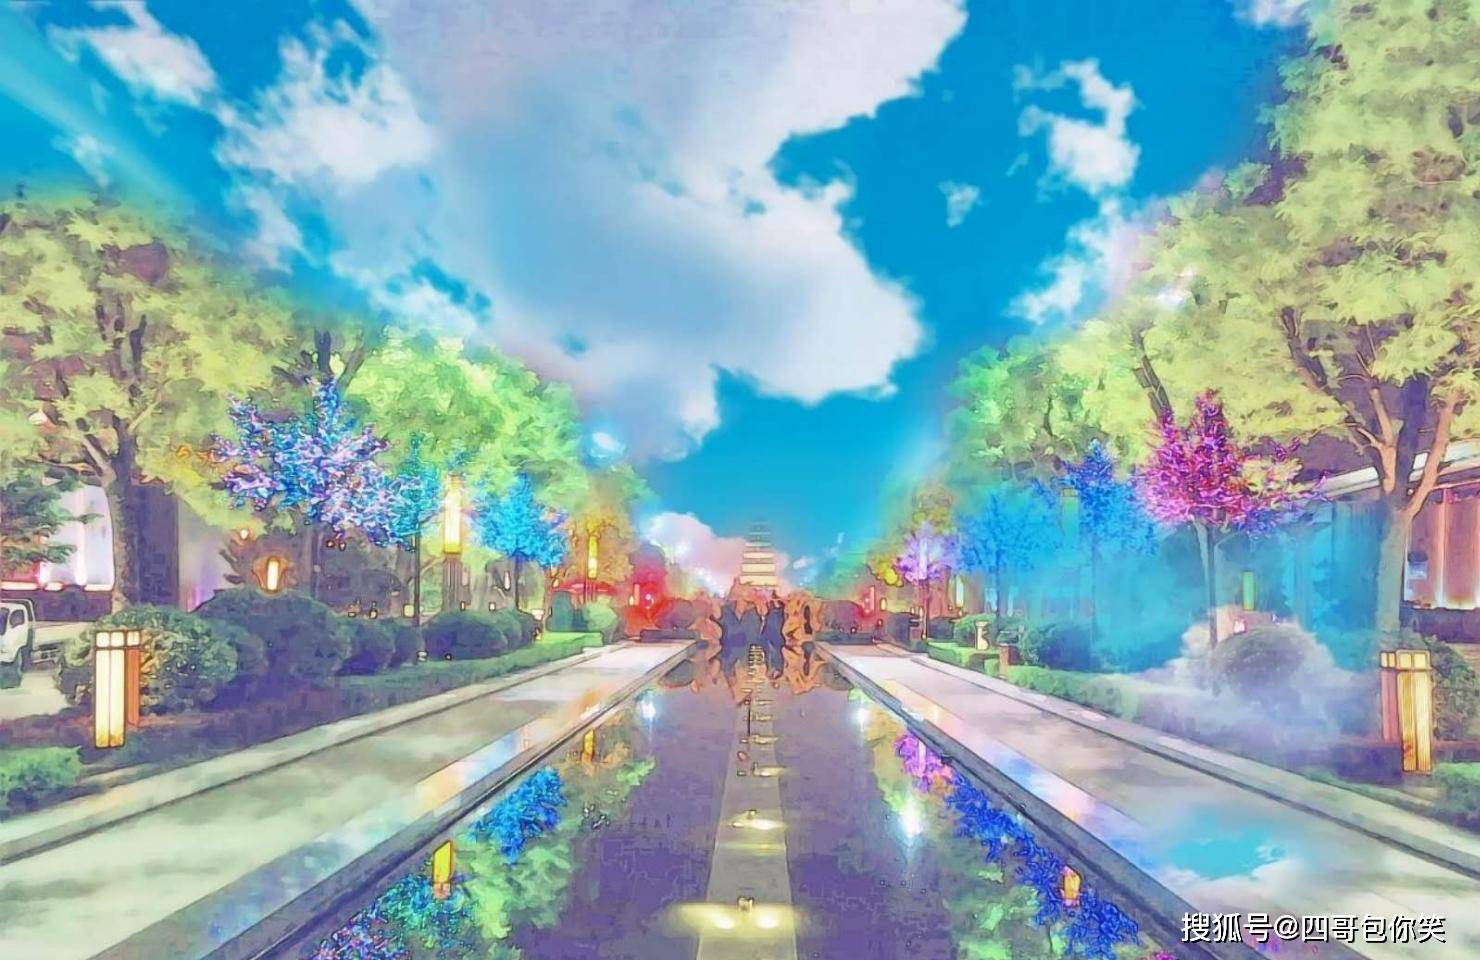 西安大唐不夜城二次元照片, 颠覆了人们对曲江夜景的记忆